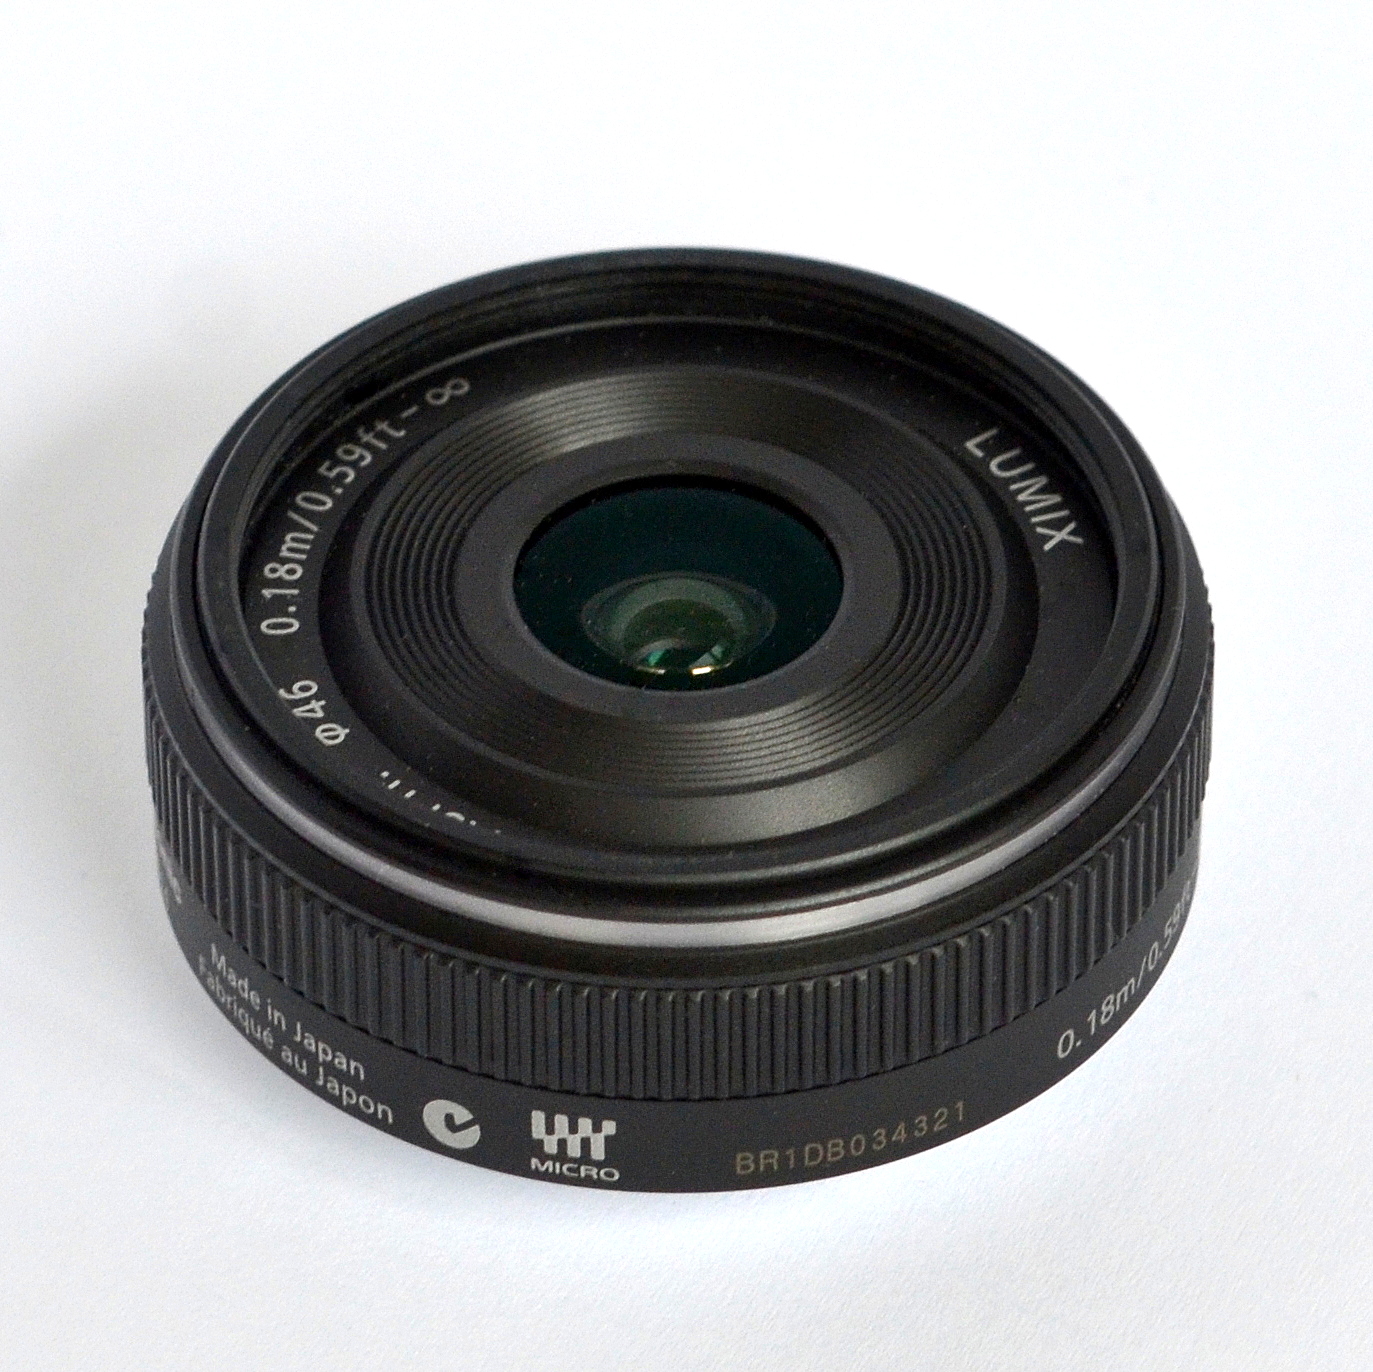 duif vallei Platteland Panasonic Lumix G 14mm lens - Wikipedia